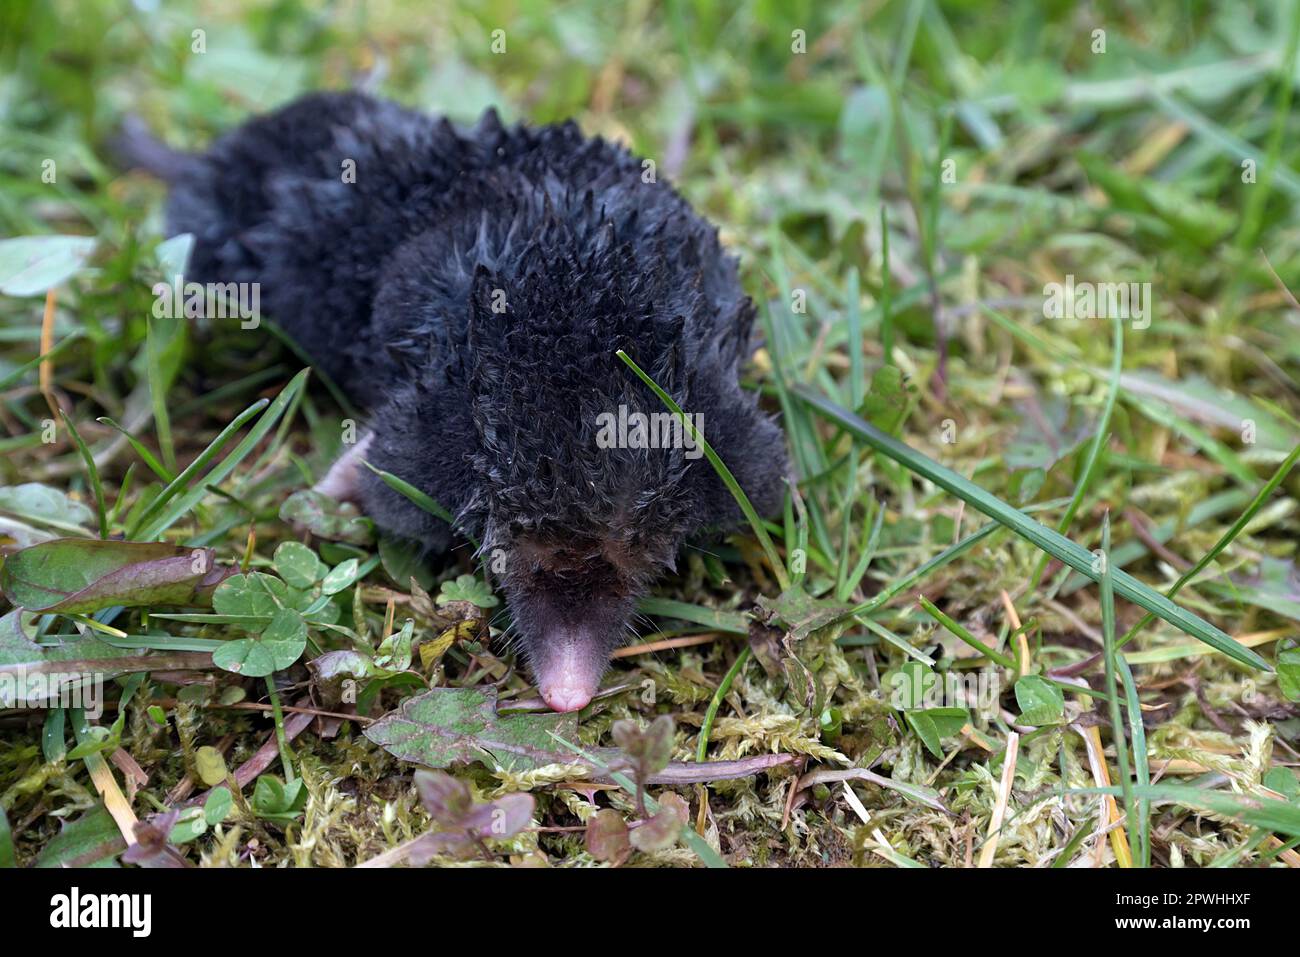 Mole (Talpidae) en hierba, Baviera, Alemania Foto de stock